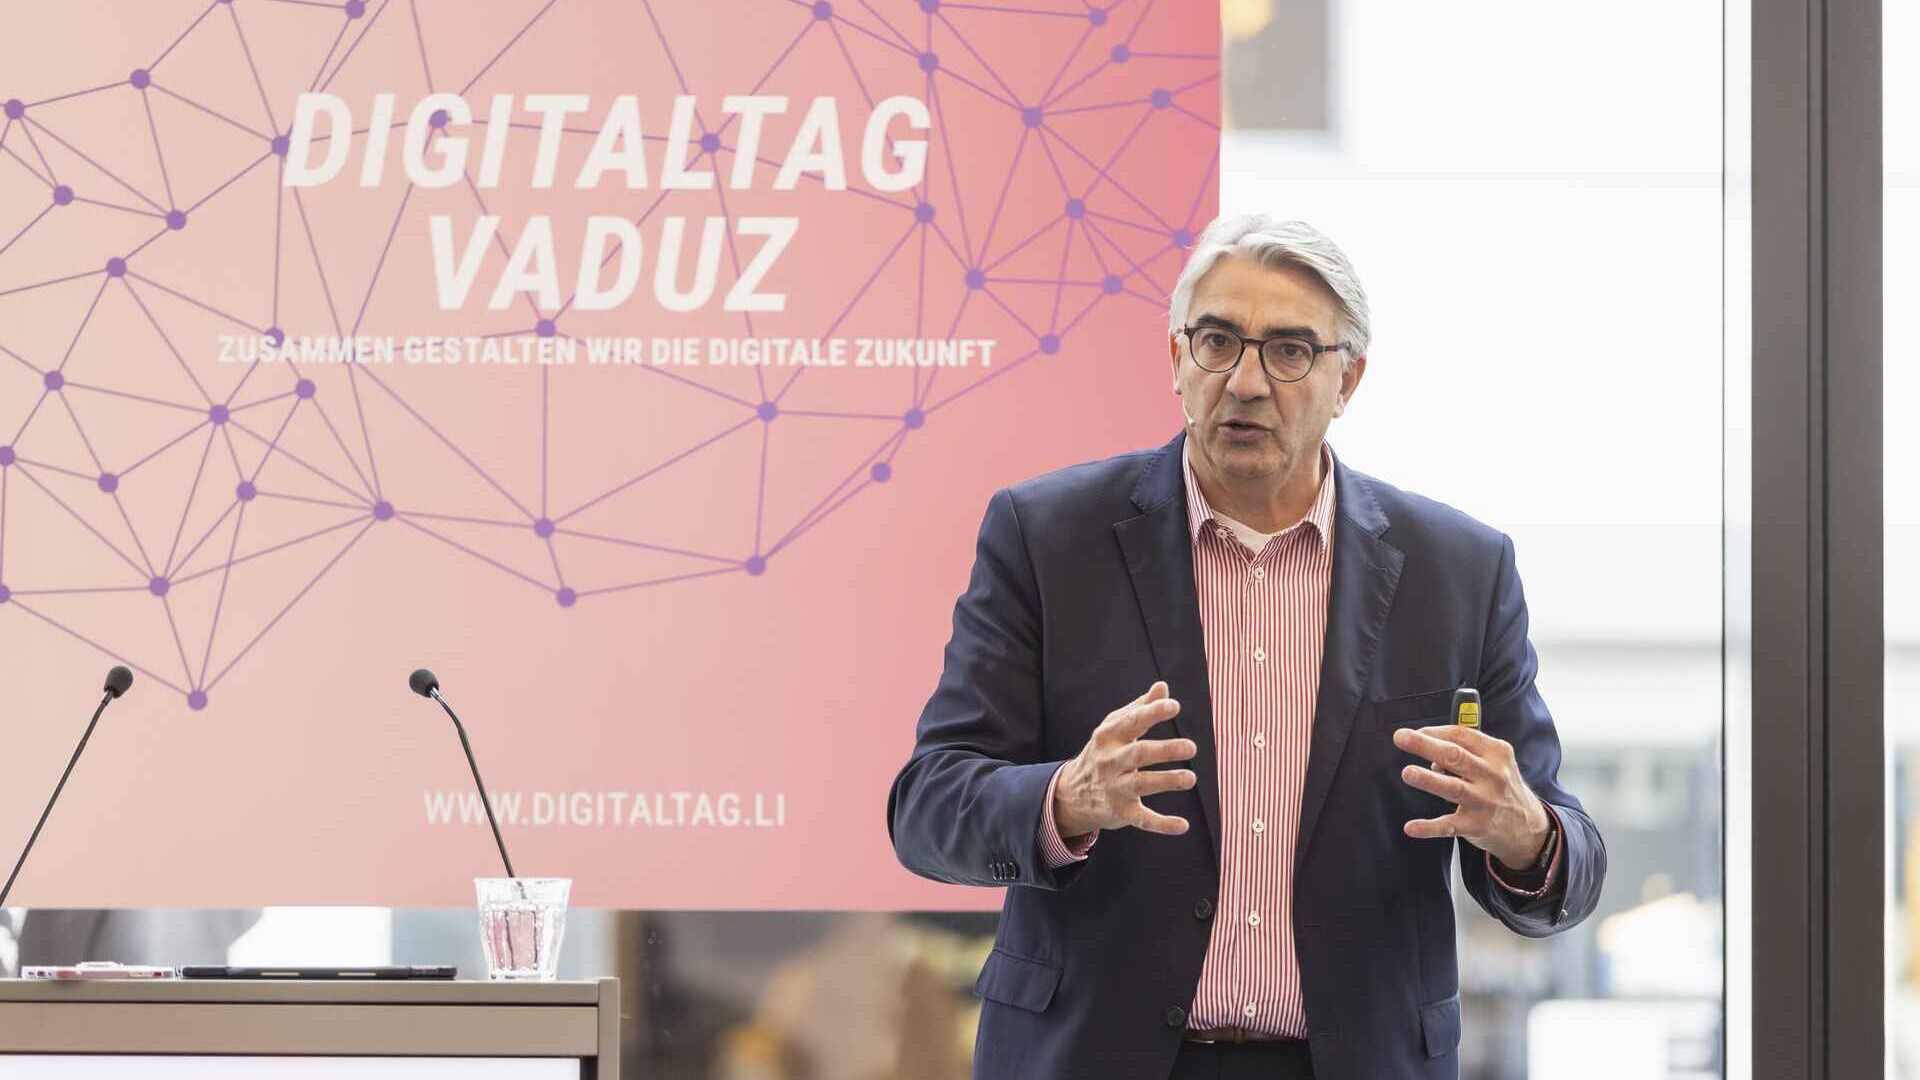 15 年 2022 月 XNUMX 日星期六，列支敦士登公国首都艺术博物馆欢迎“Digitaltag Vaduz”